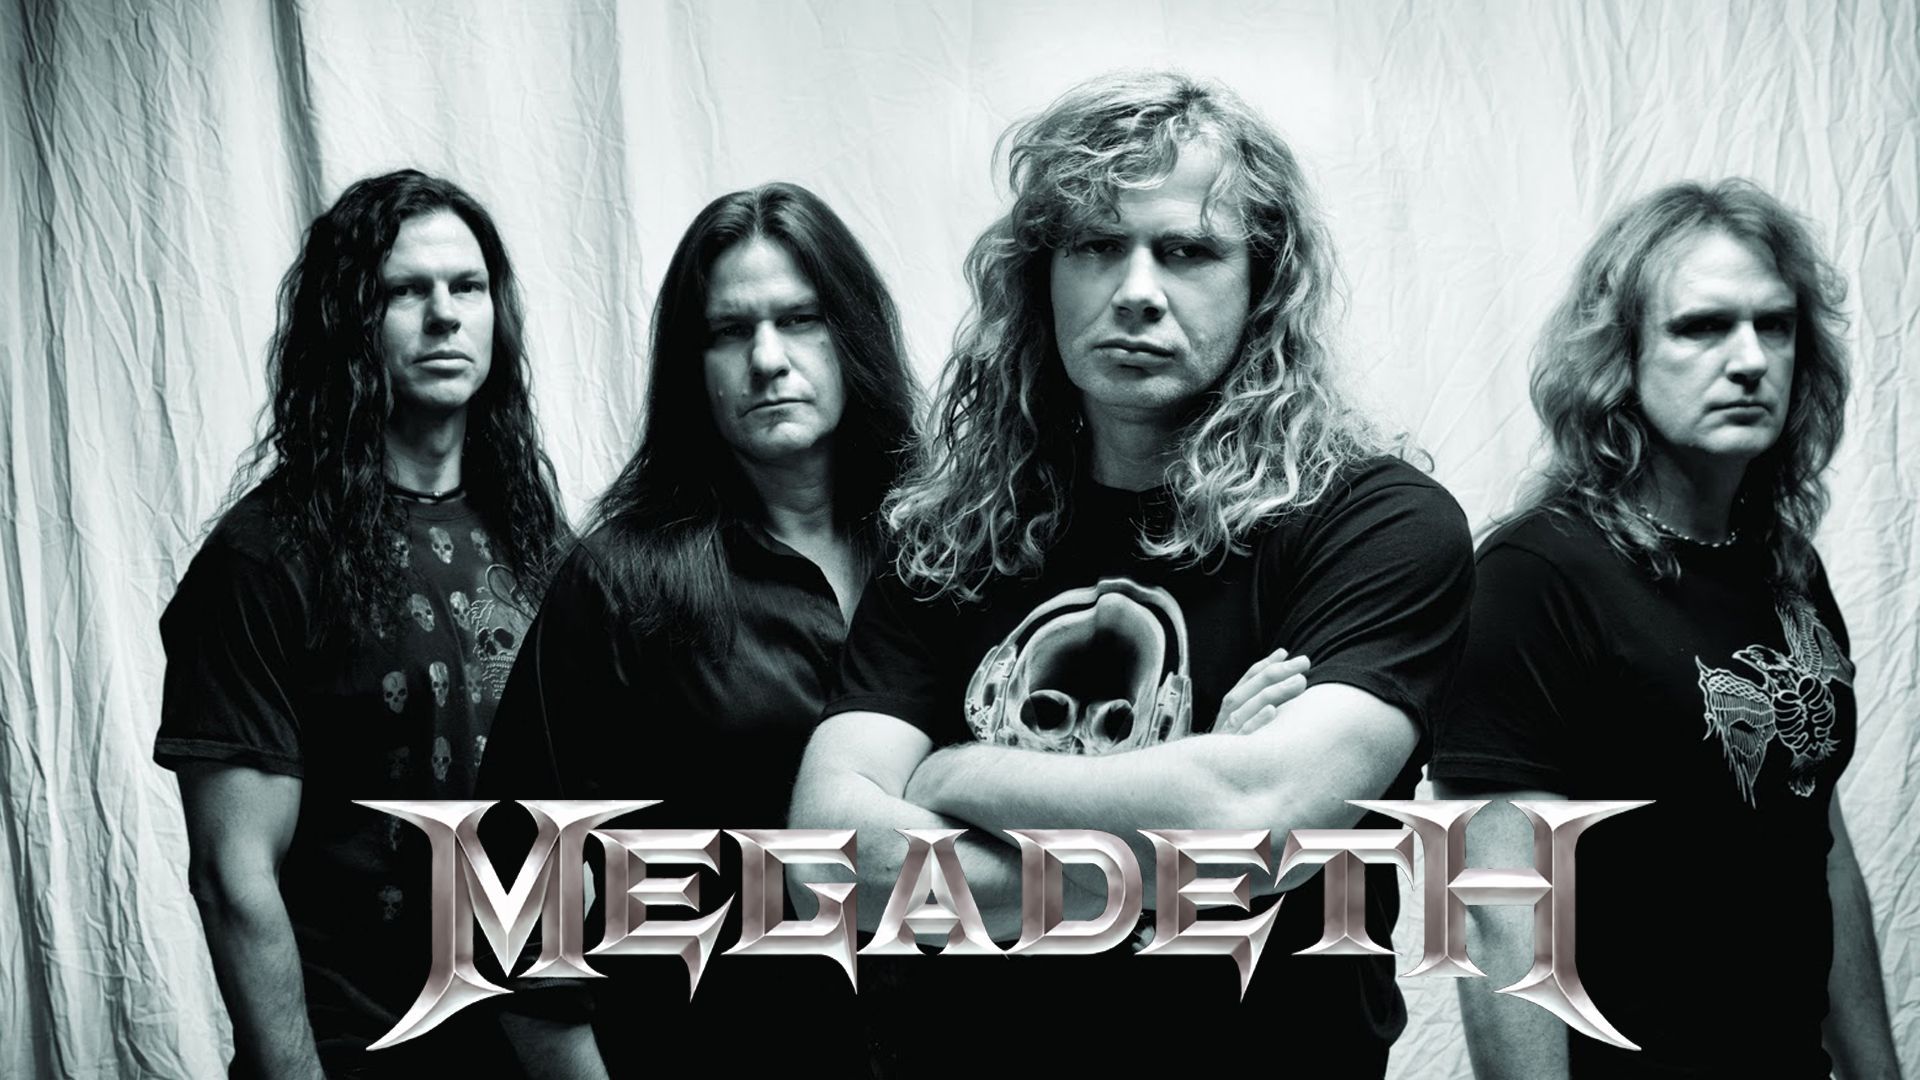 Megadeth HD Wallpaper | 1920x1080 | ID:37515